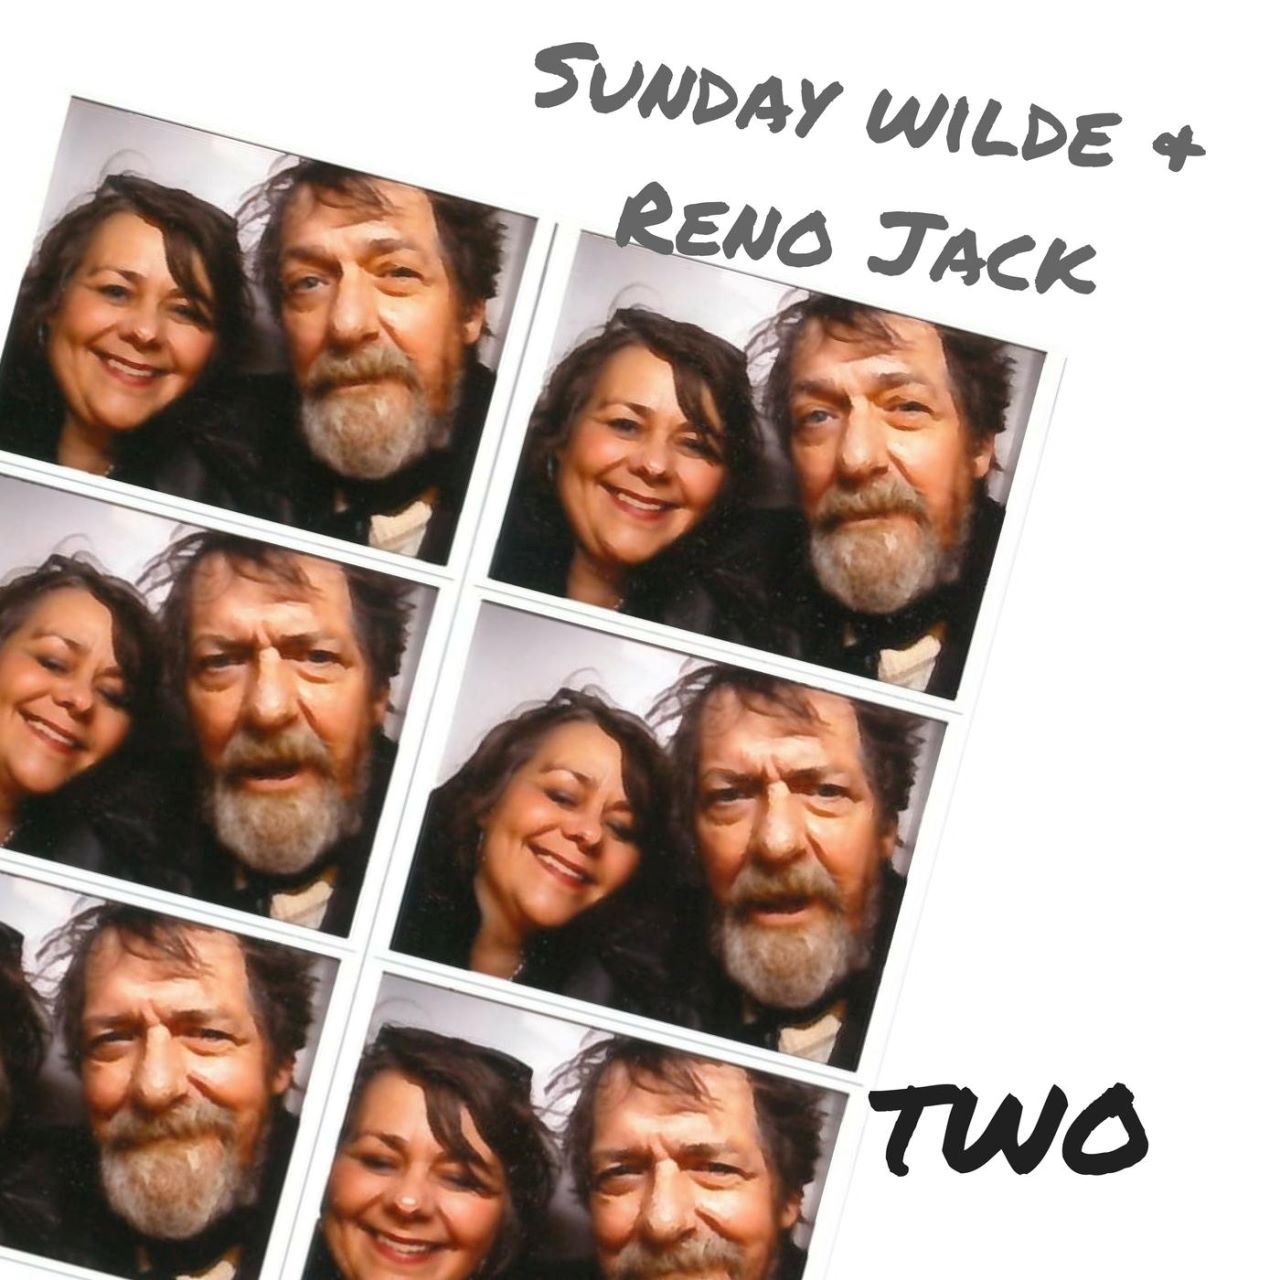 Sunday Wilde & Reno Jack - Two cover album